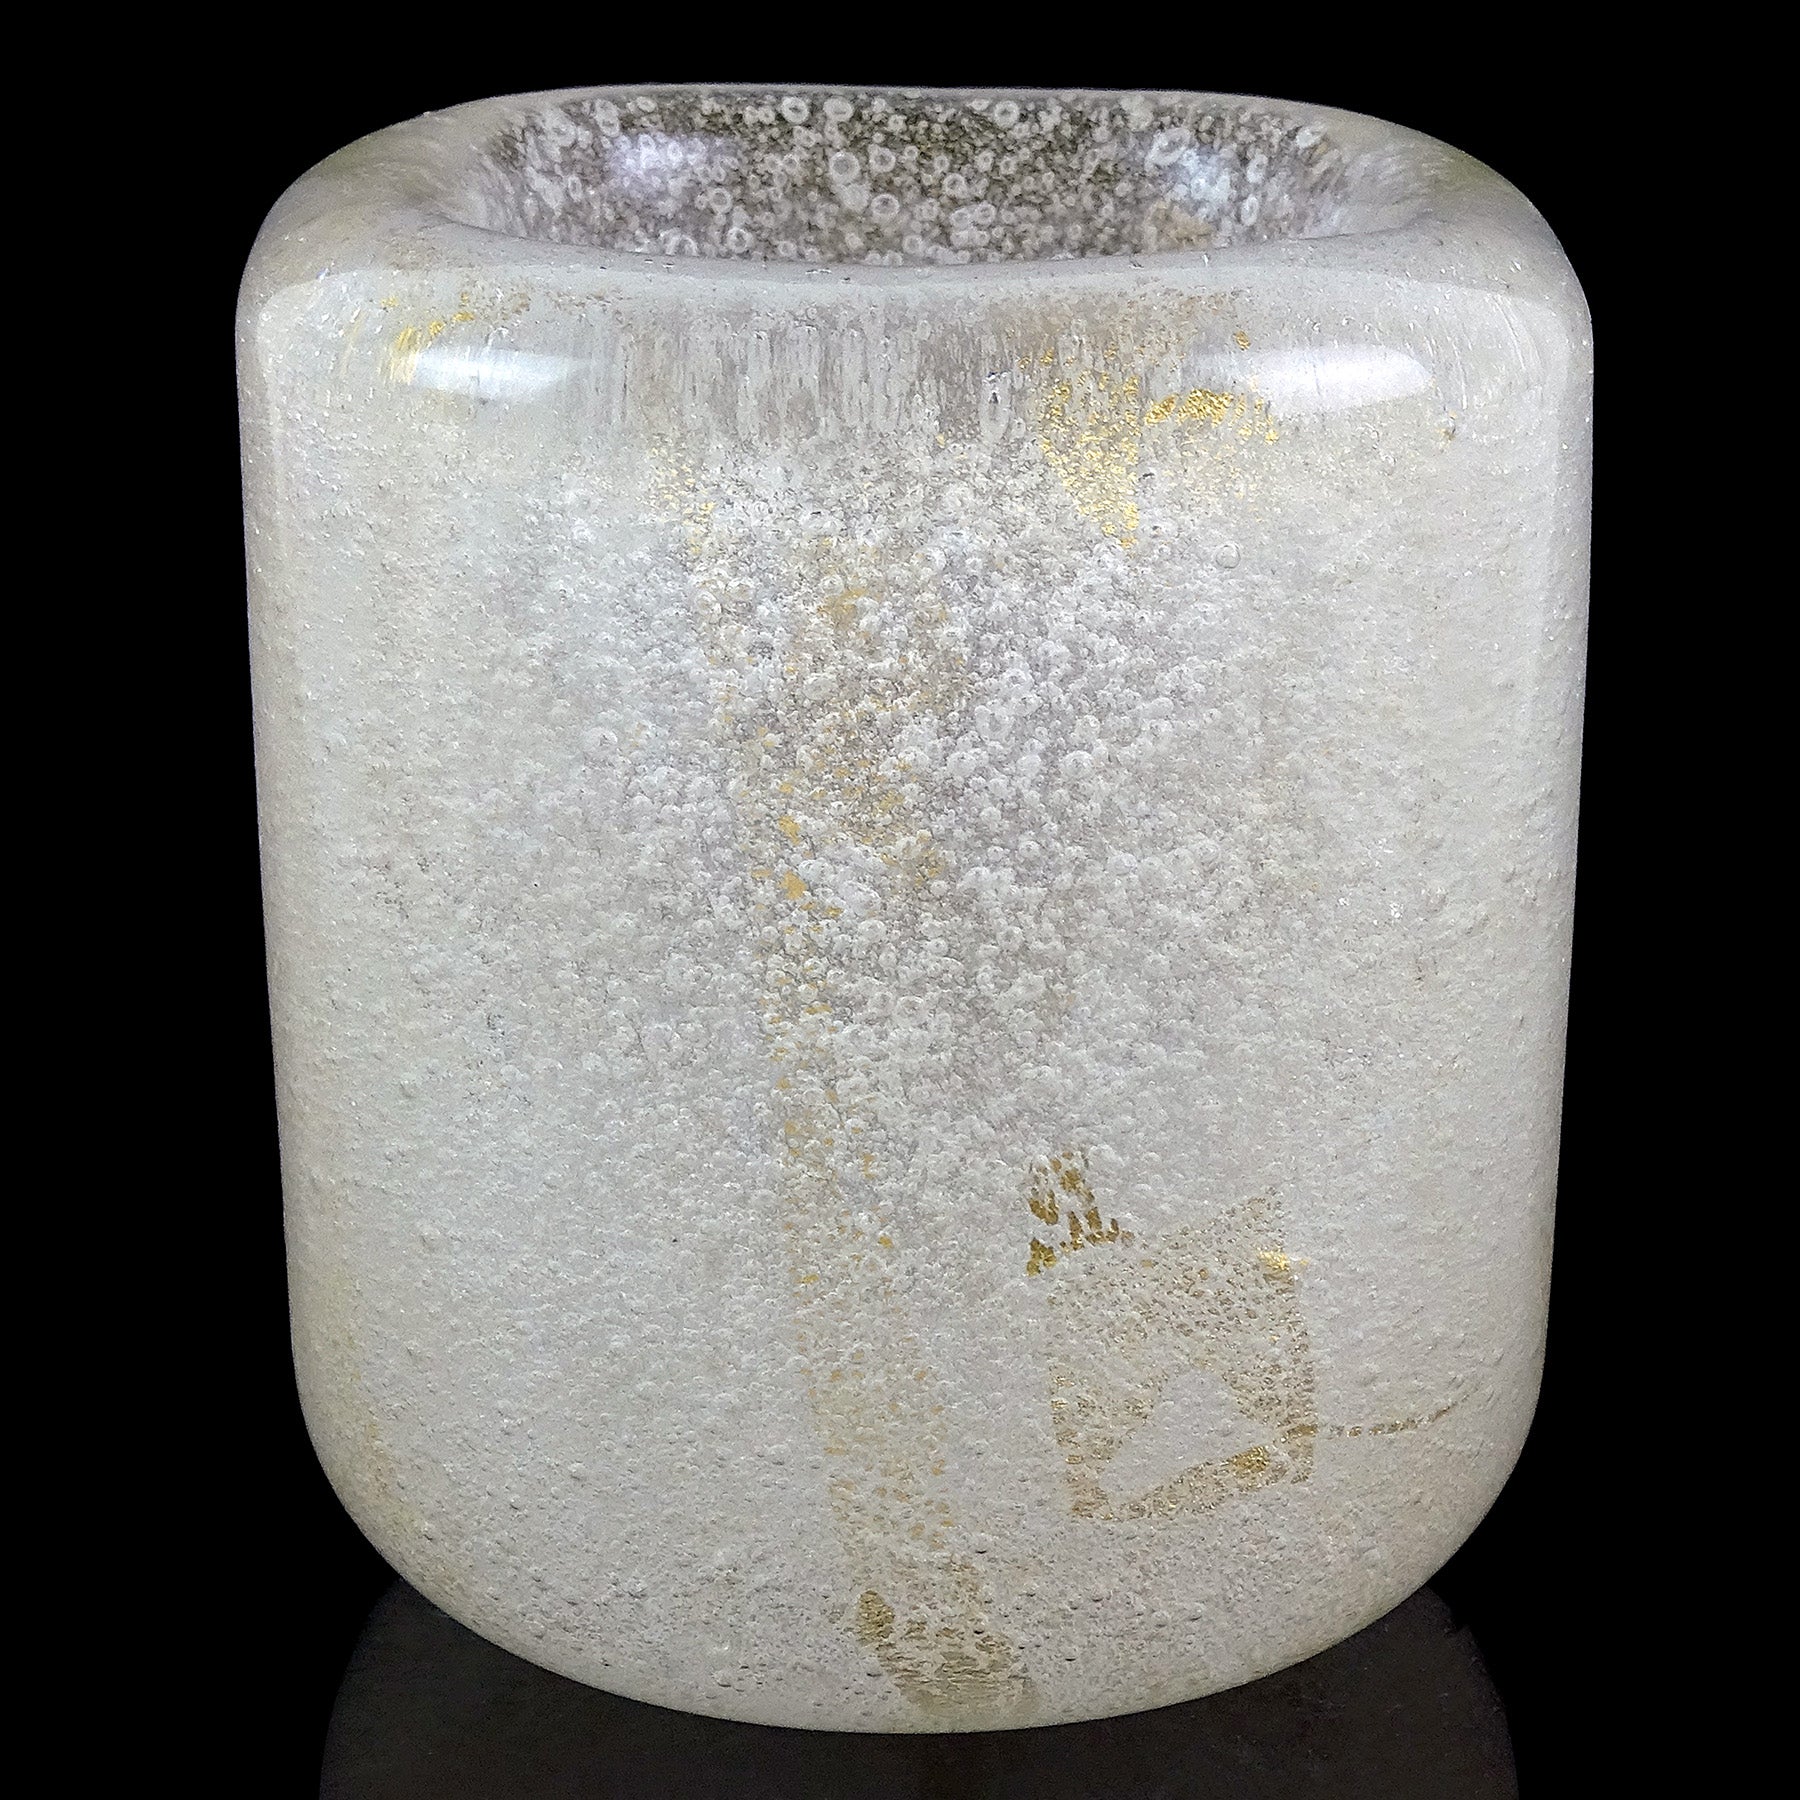 Magnifique mini vase / vide poche en verre d'art italien Murano soufflé à la main Sommerso, blanc clair, bulles et taches d'or. Documenté à la société Venini, et créé par le maître designer et architecte Carlo Scarpa. La signature en deux lignes